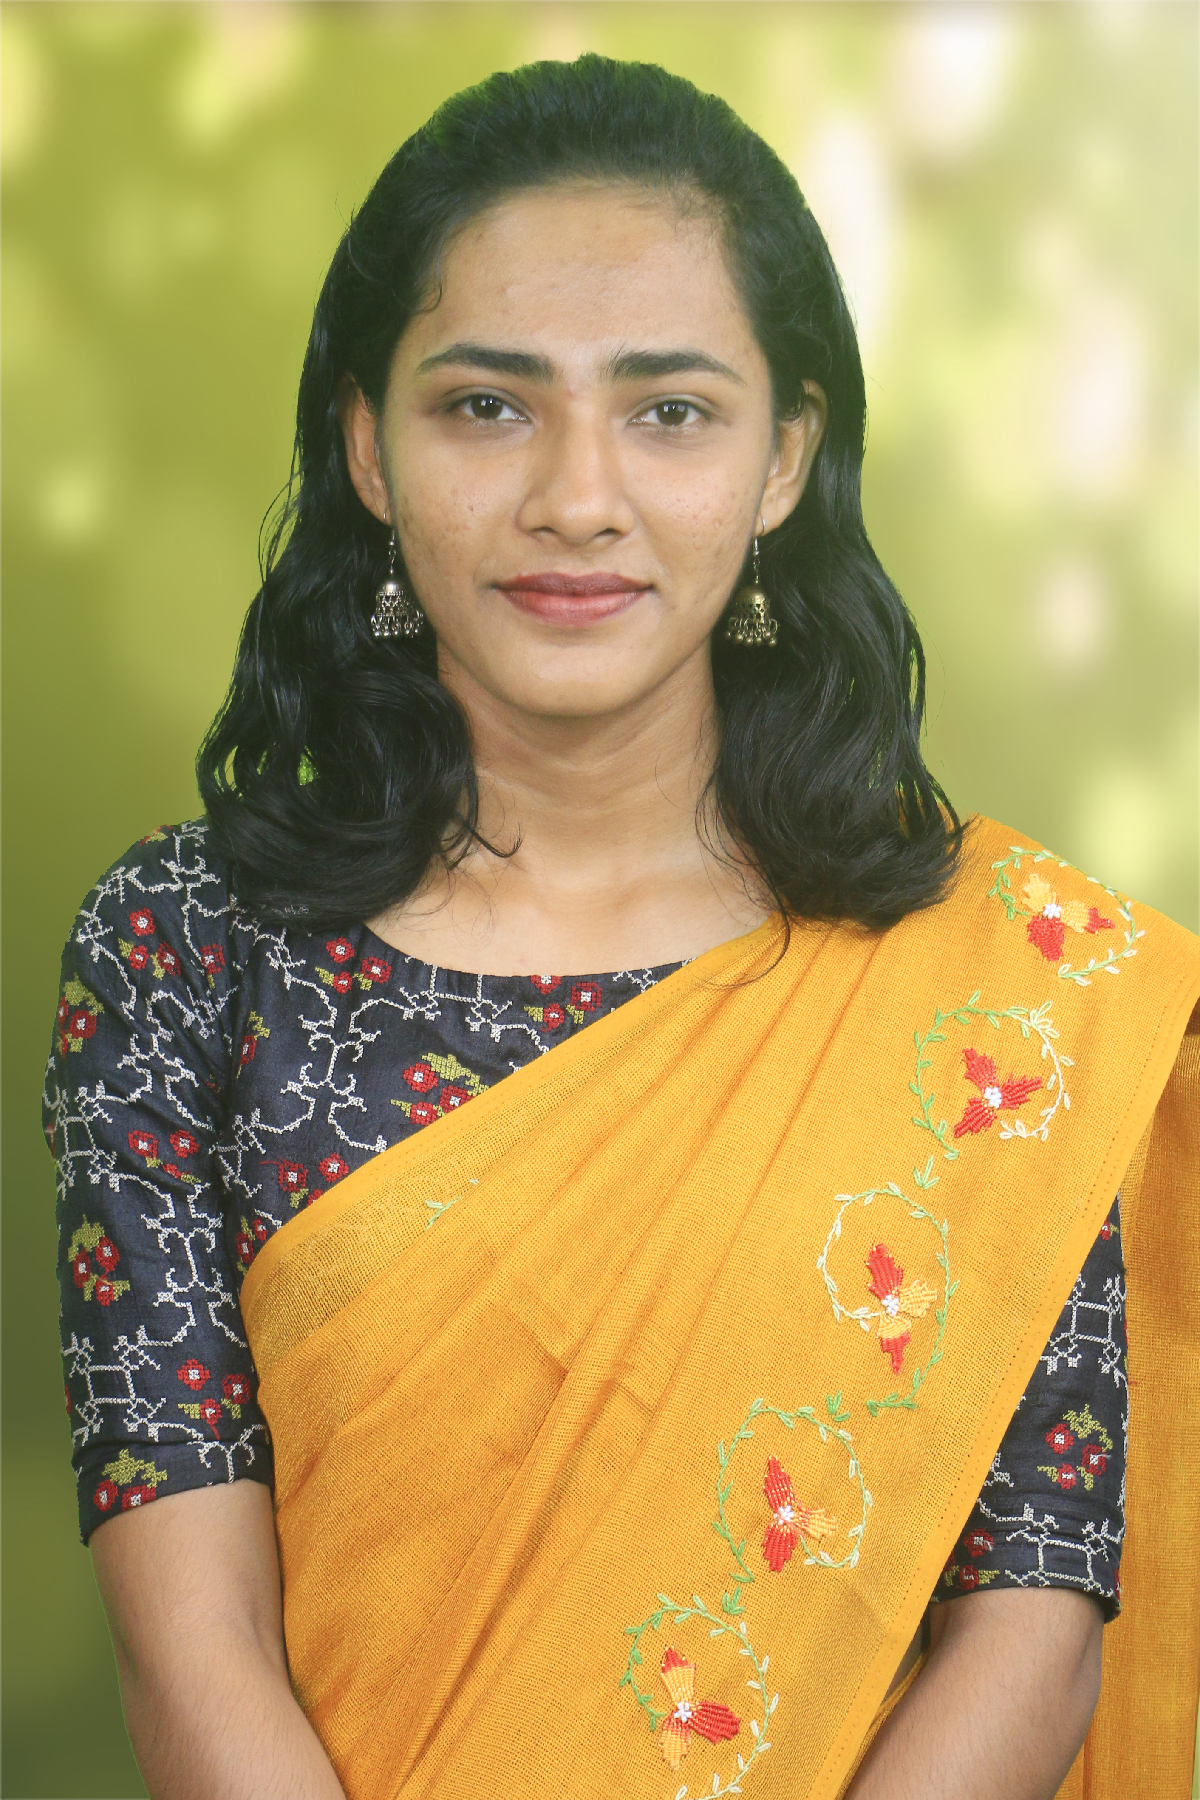 Chandana Varachan